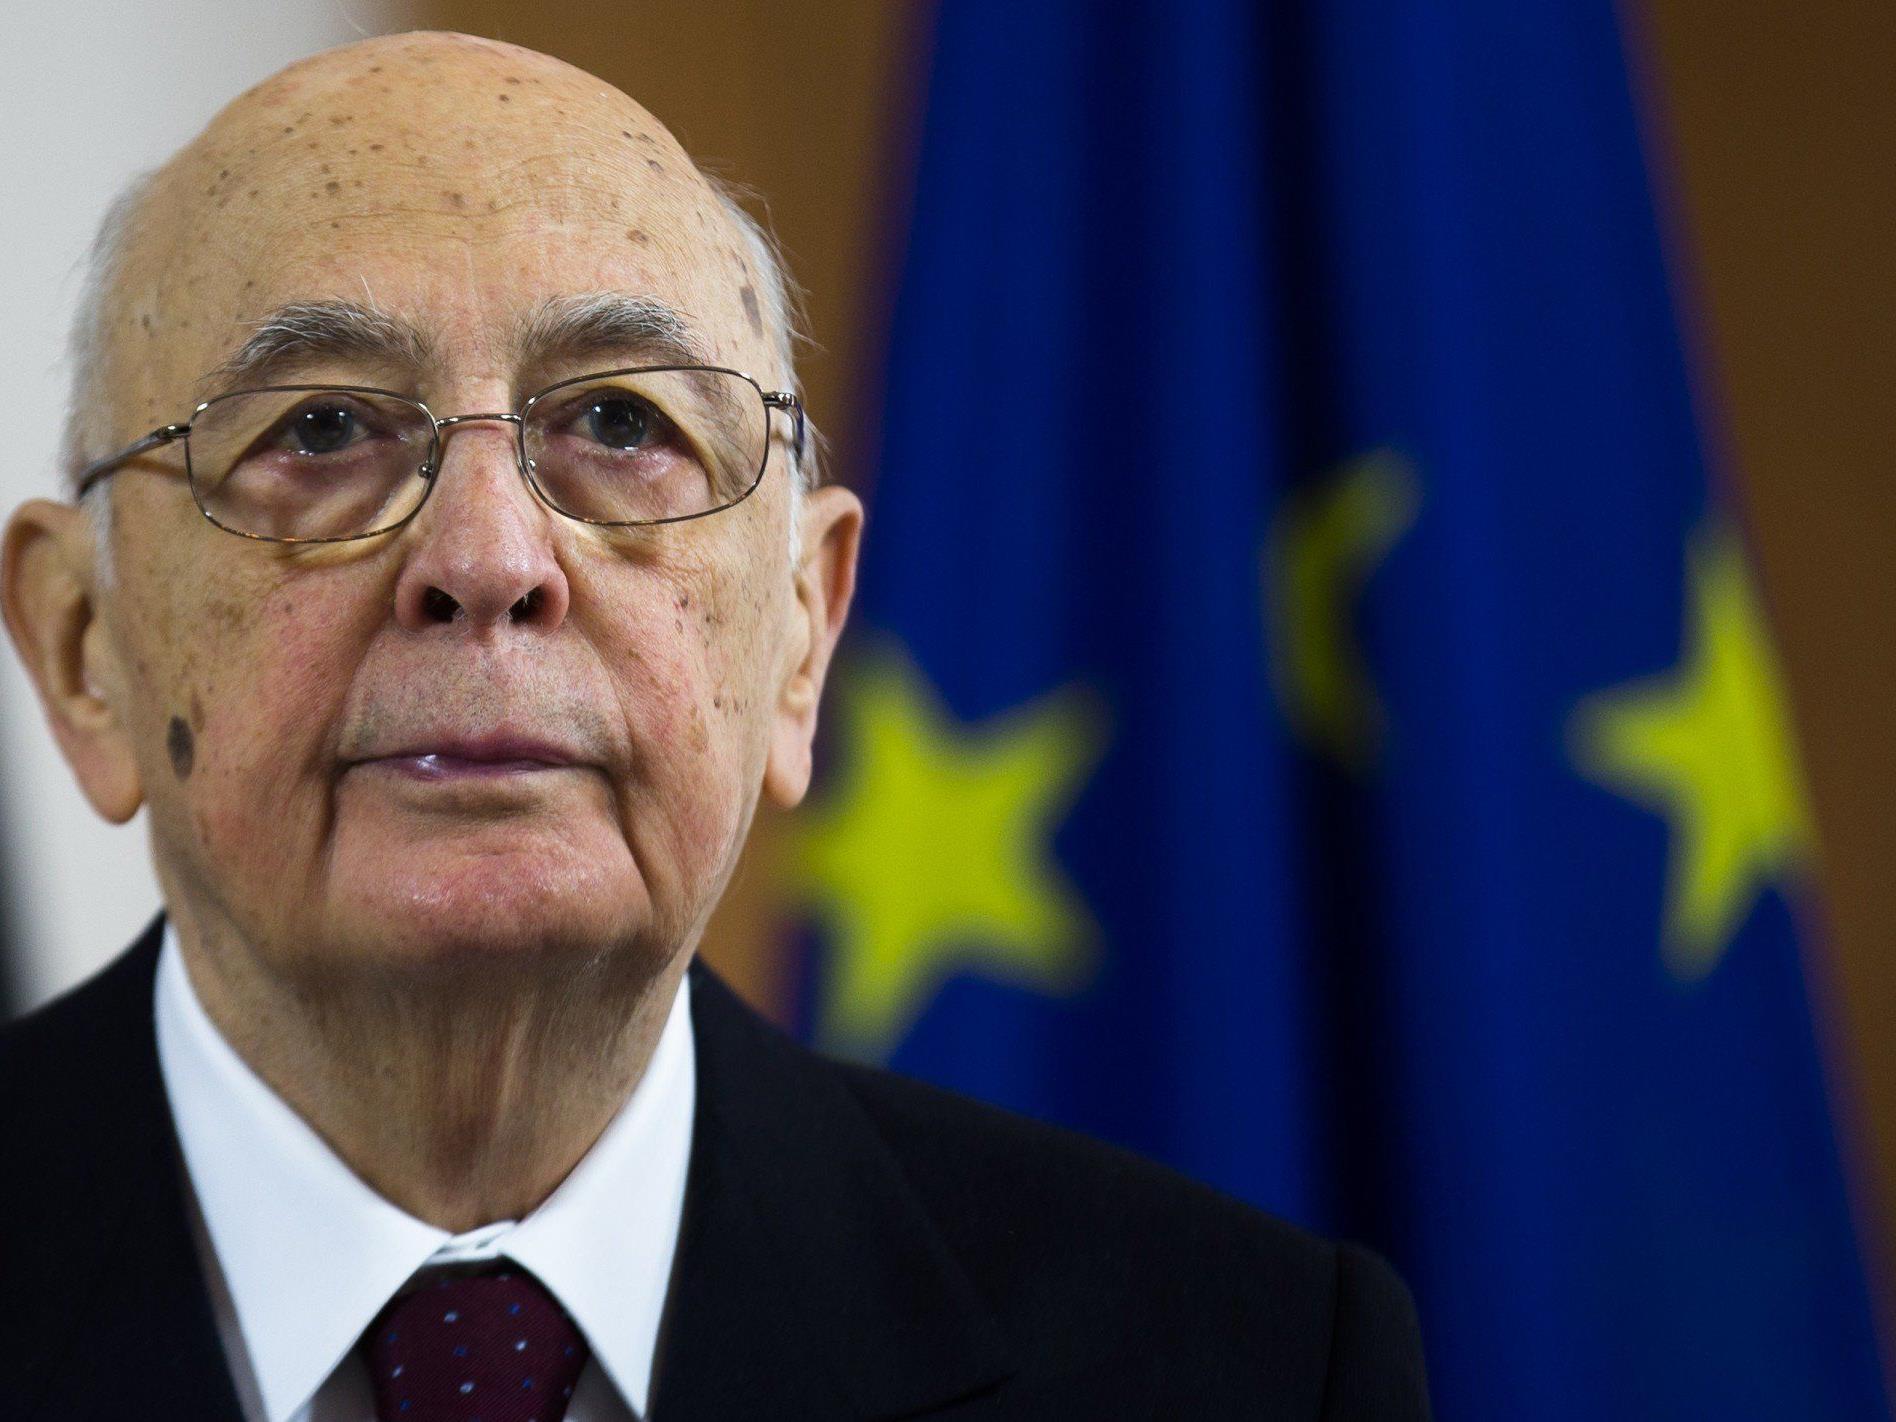 Da sich die Kammern auf keinen Nachfolger einigen konnten, tritt der 87-jährige Giorgio Napolitano ein zweites Mal an.